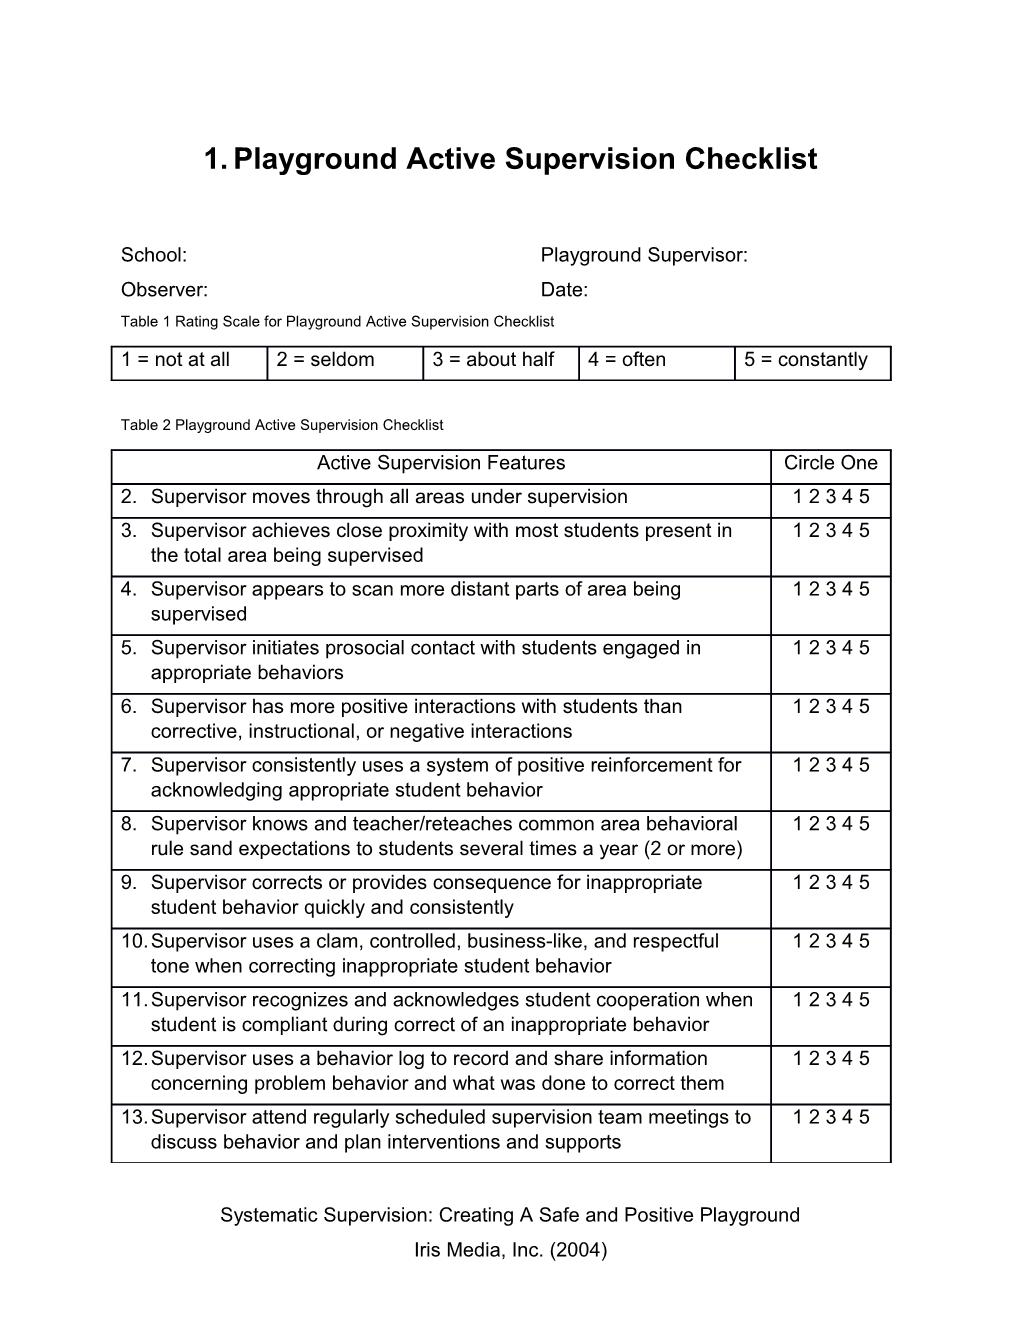 Playground Active Supervsion Checklist